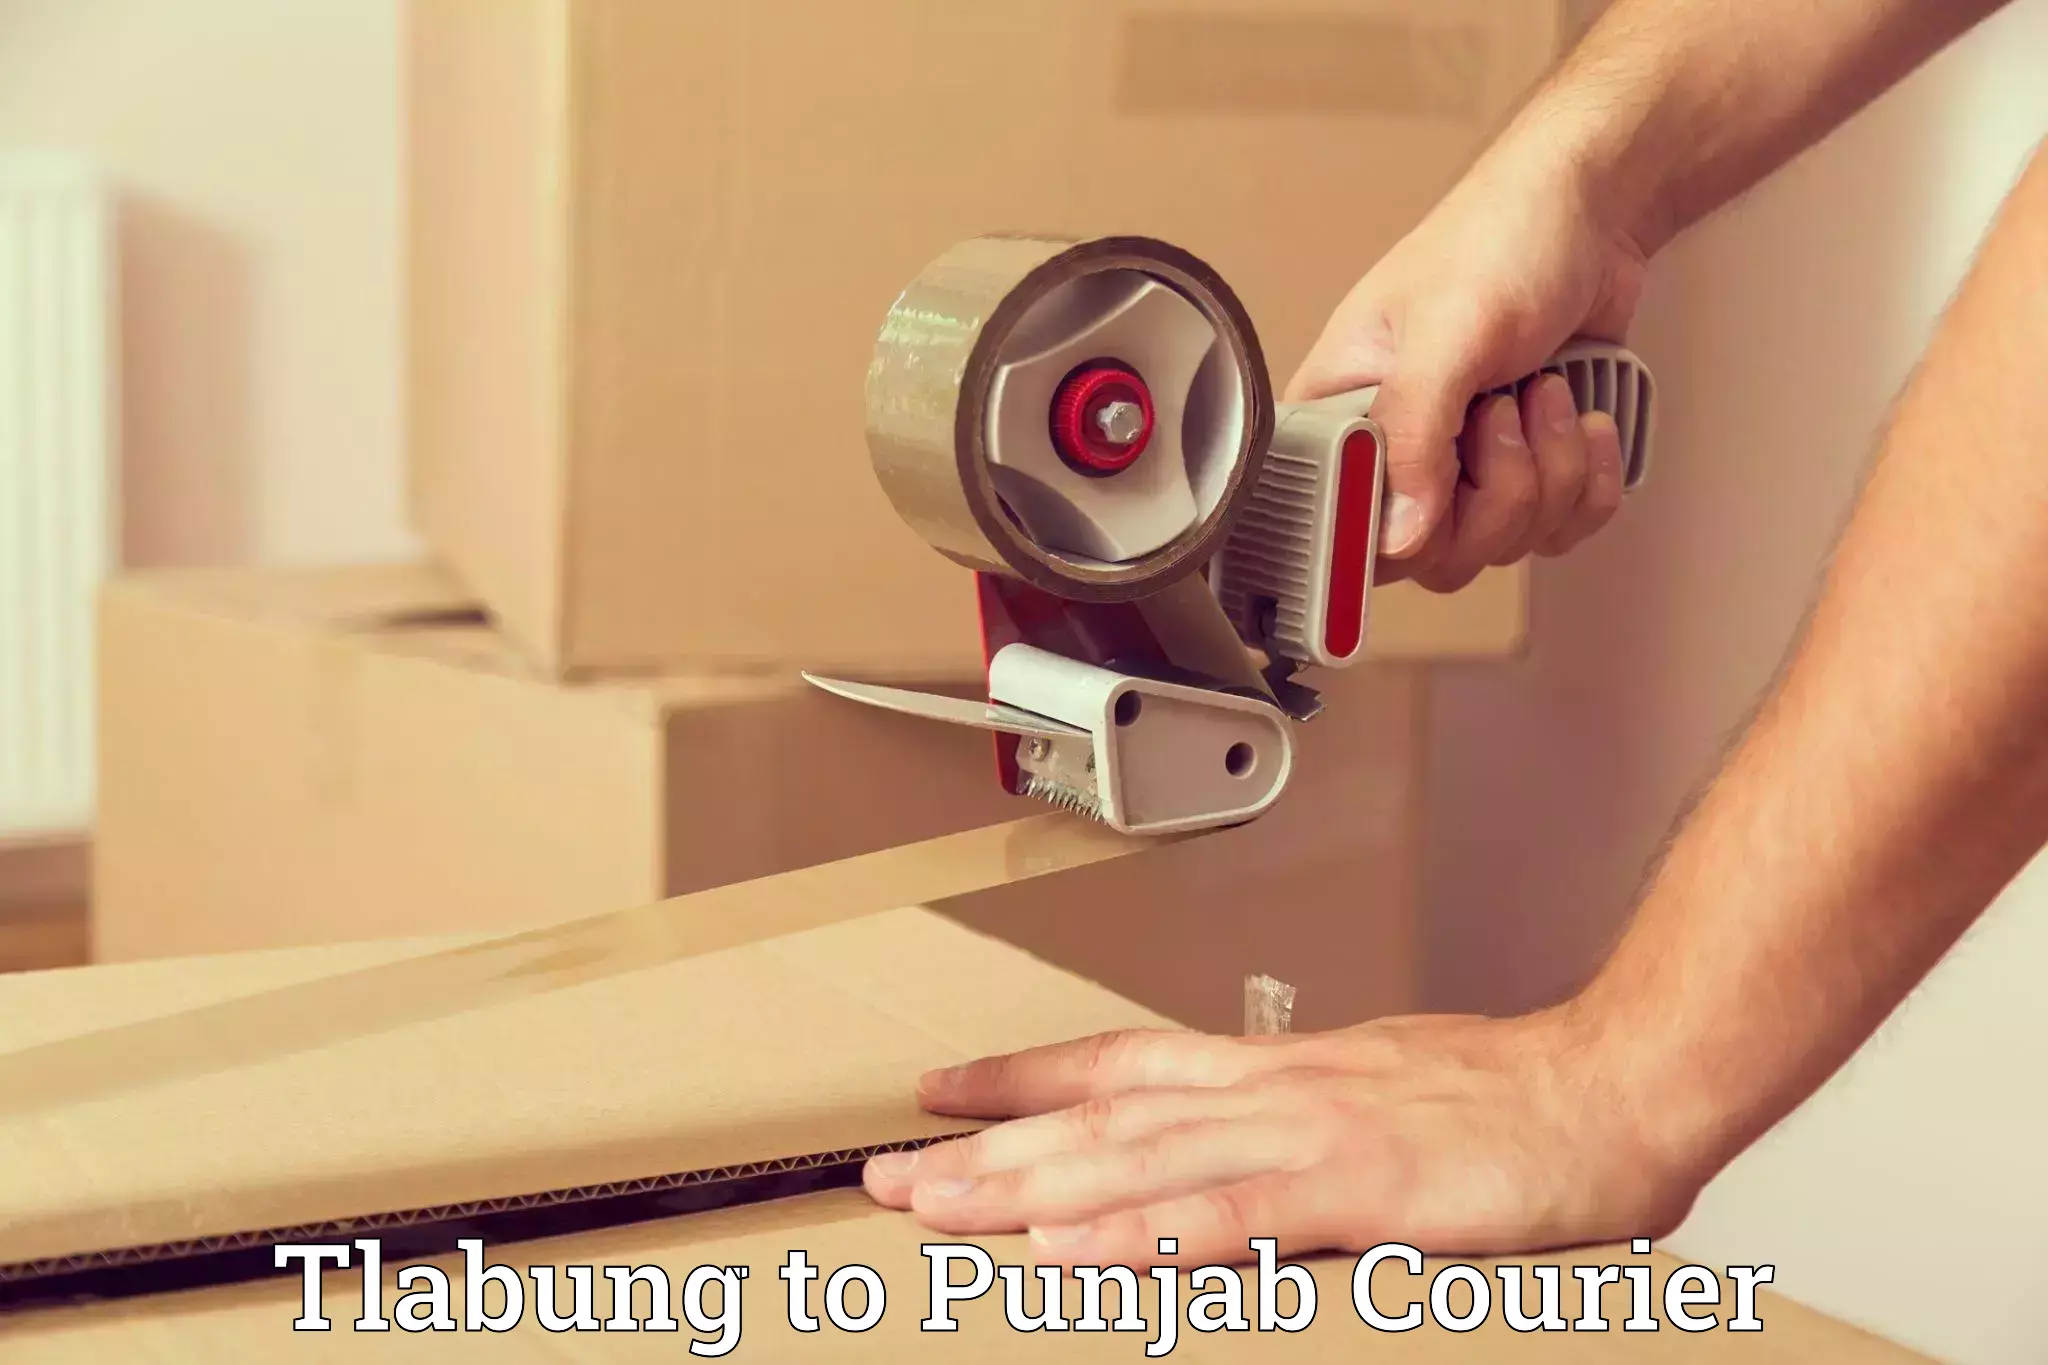 Furniture transport experts Tlabung to Punjab